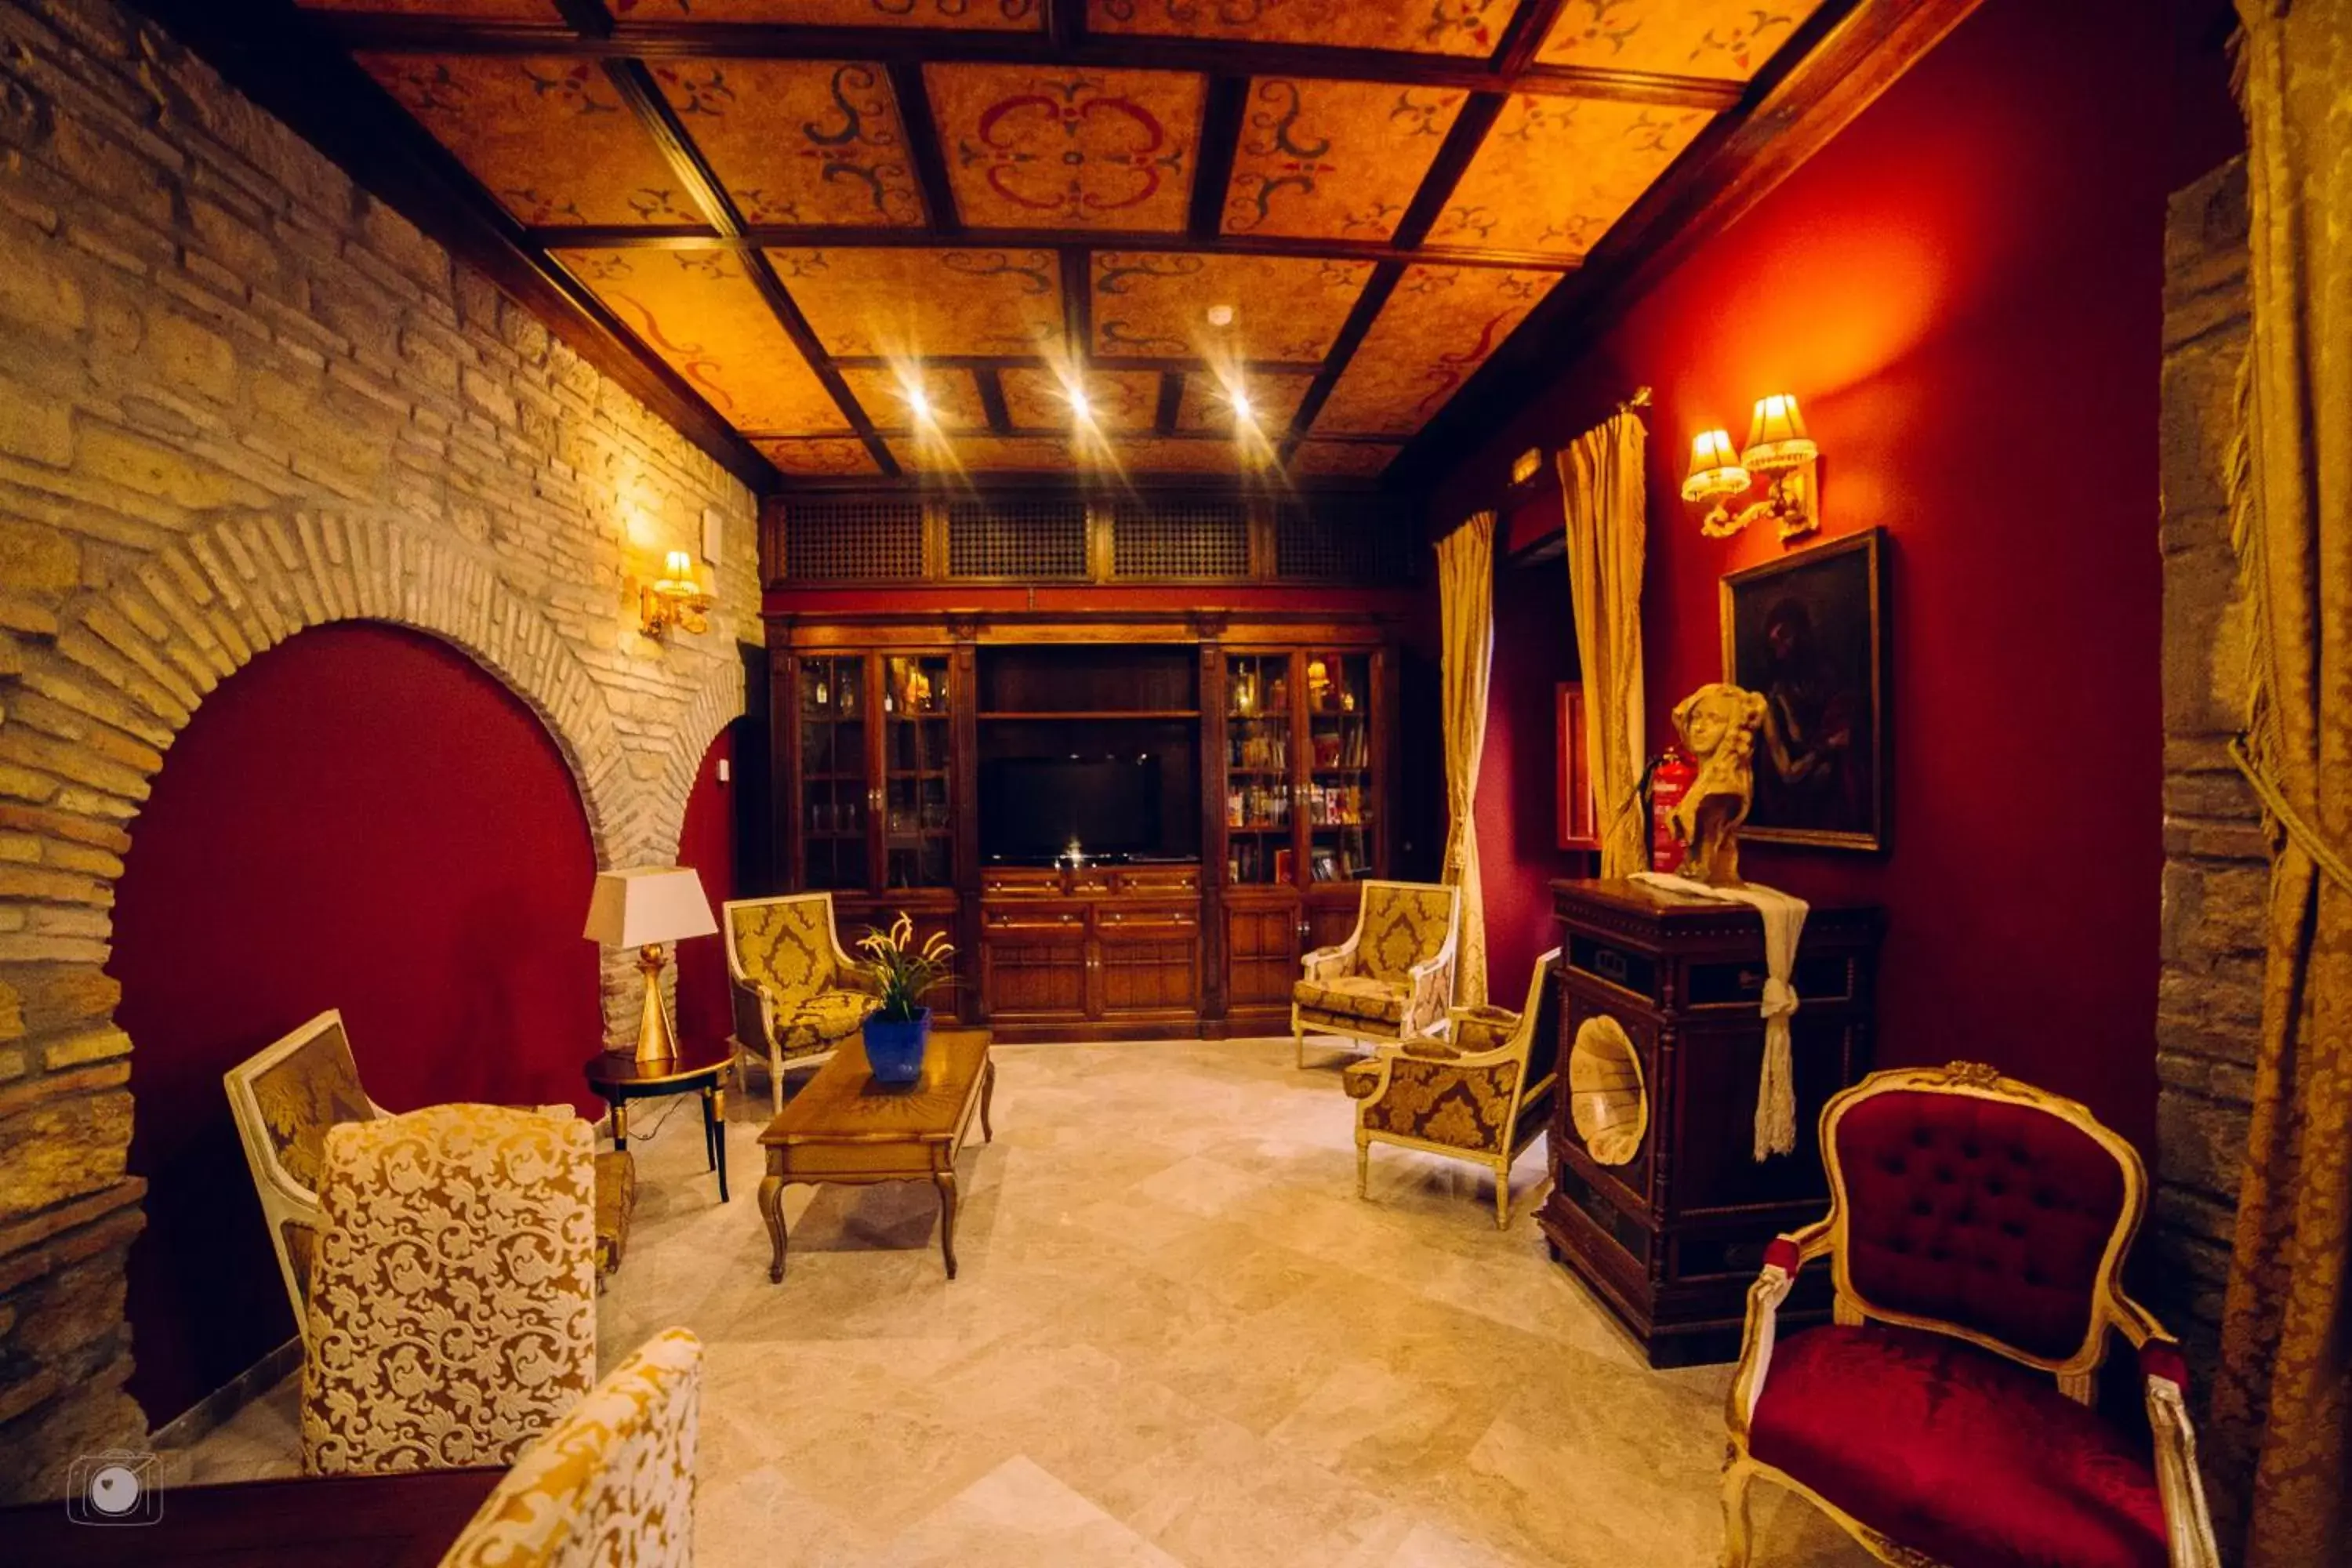 Lobby or reception, Lobby/Reception in Hotel Posada de Vallina by MiRa